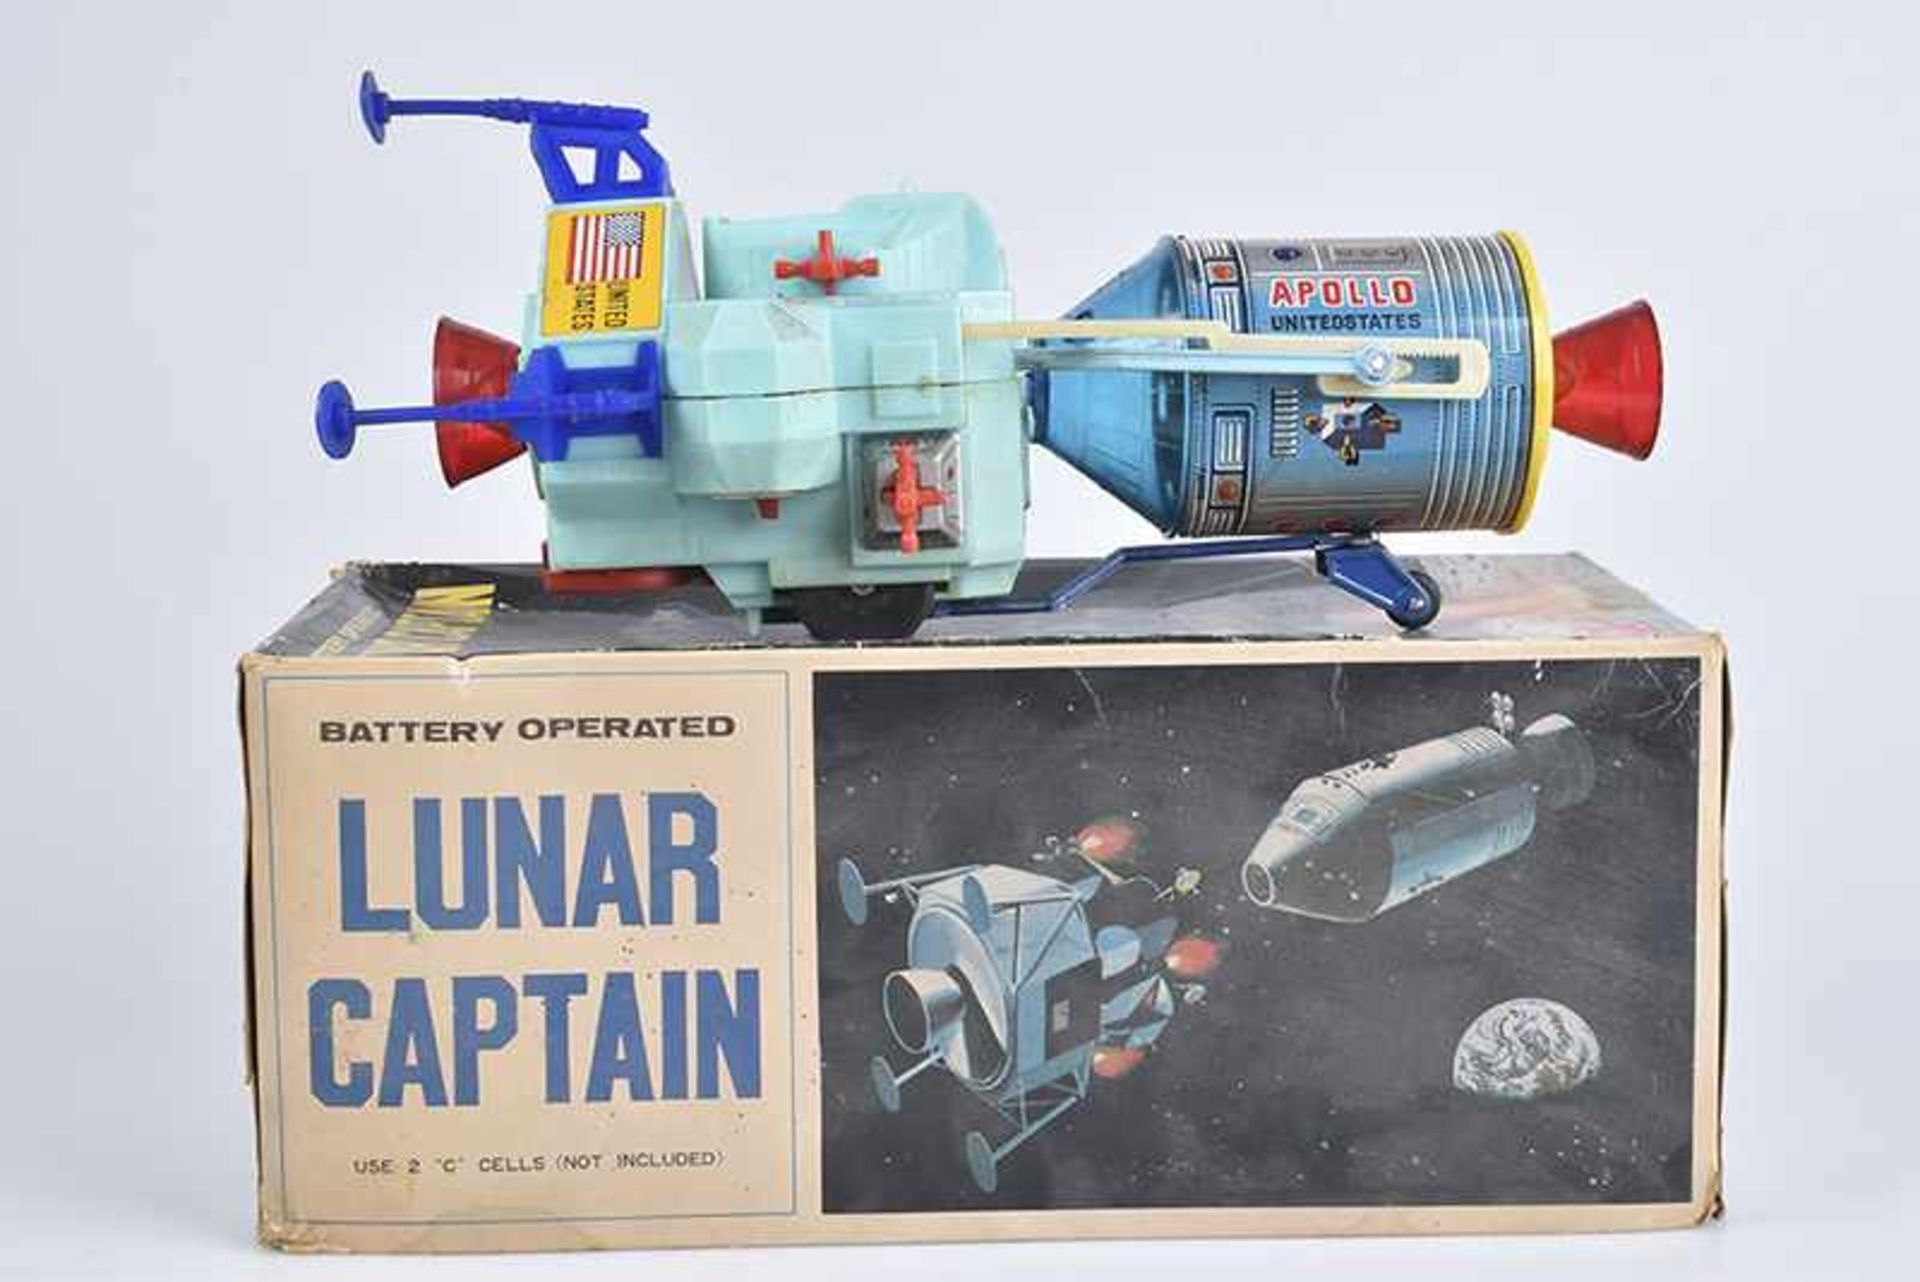 T.N Lunar Captain, 60er Jahre, Made in Japan, Blech/ Kunststoff, lithographiert, H 28 cm, BA, Z 2,